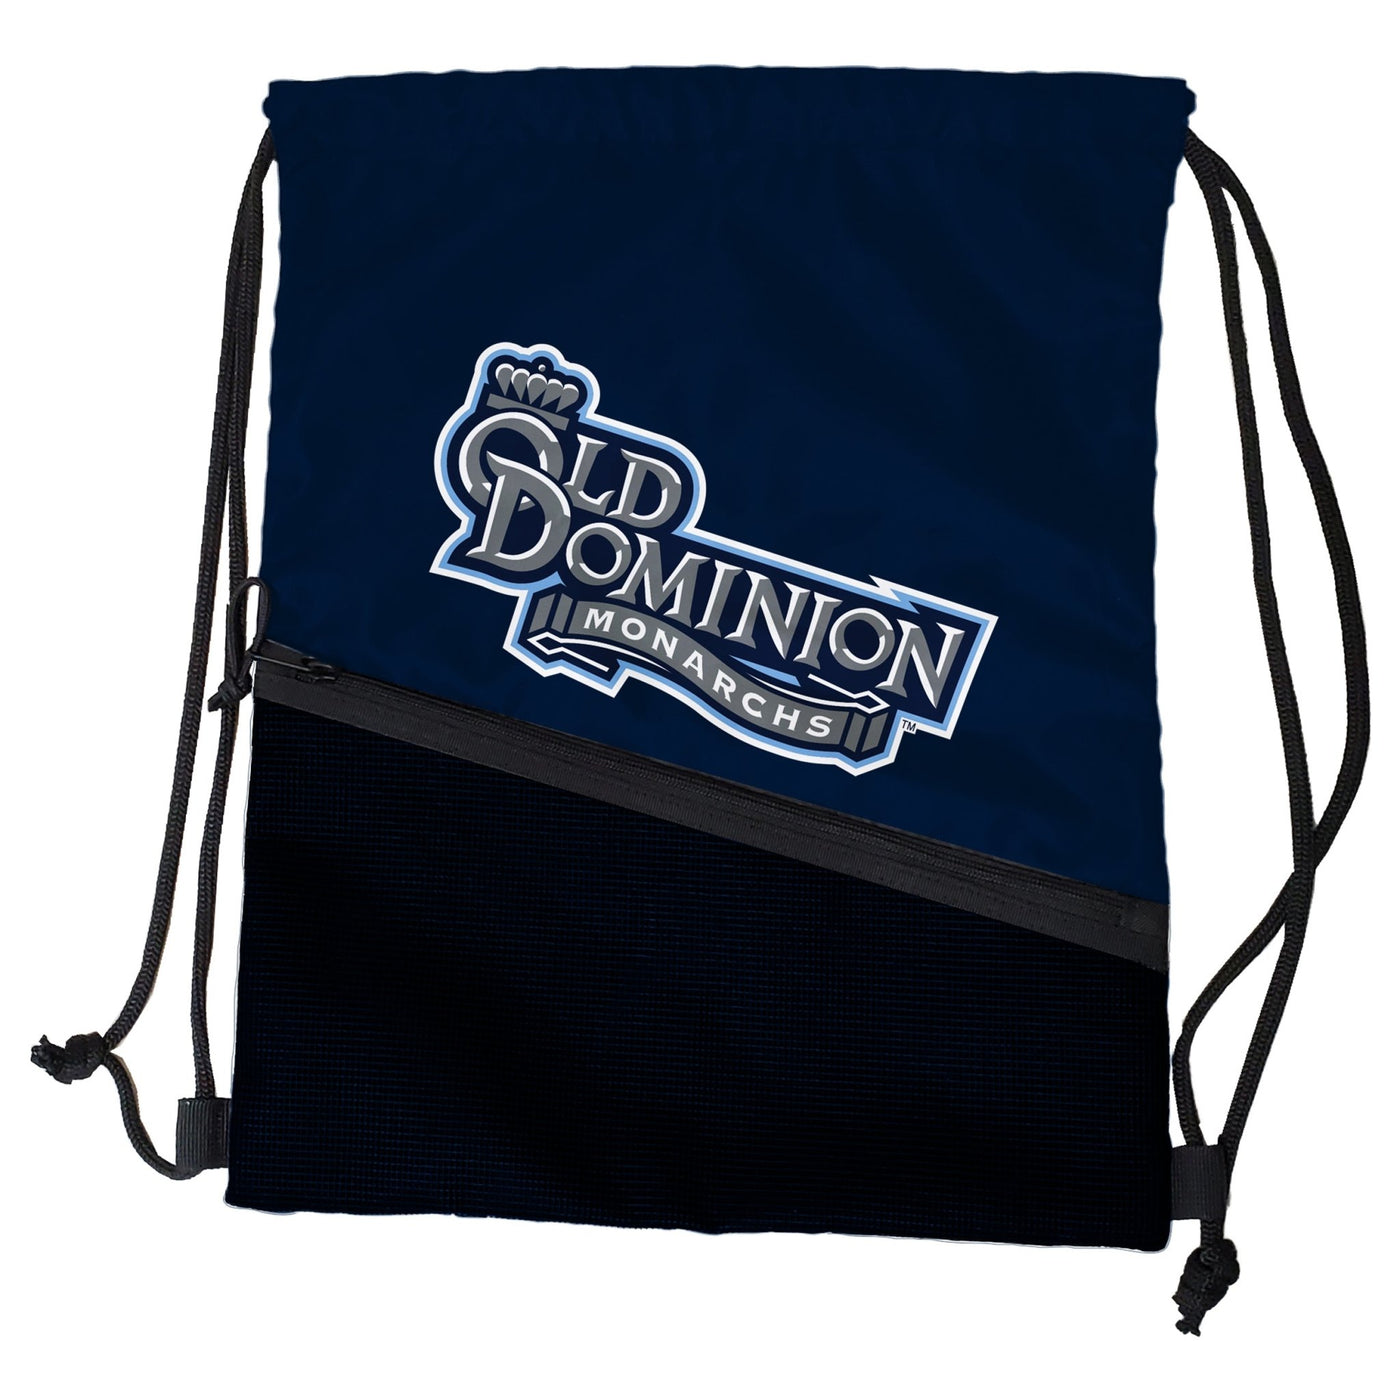 Old Dominion Tilt Backsack - Logo Brands